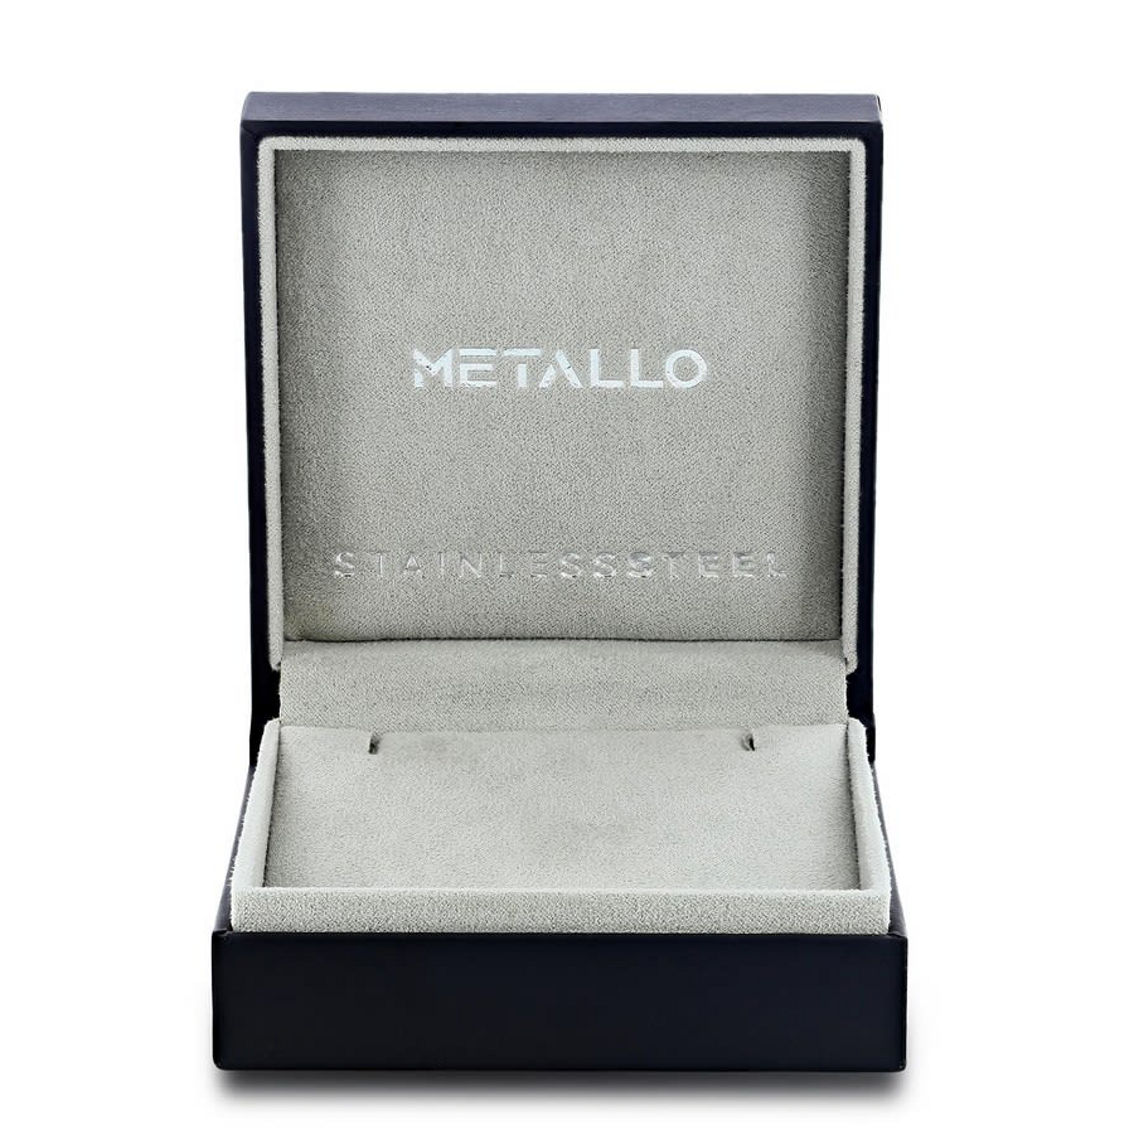 Metallo Stainless Steel Genuine Onyx Skull Bracelet - Image 4 of 4